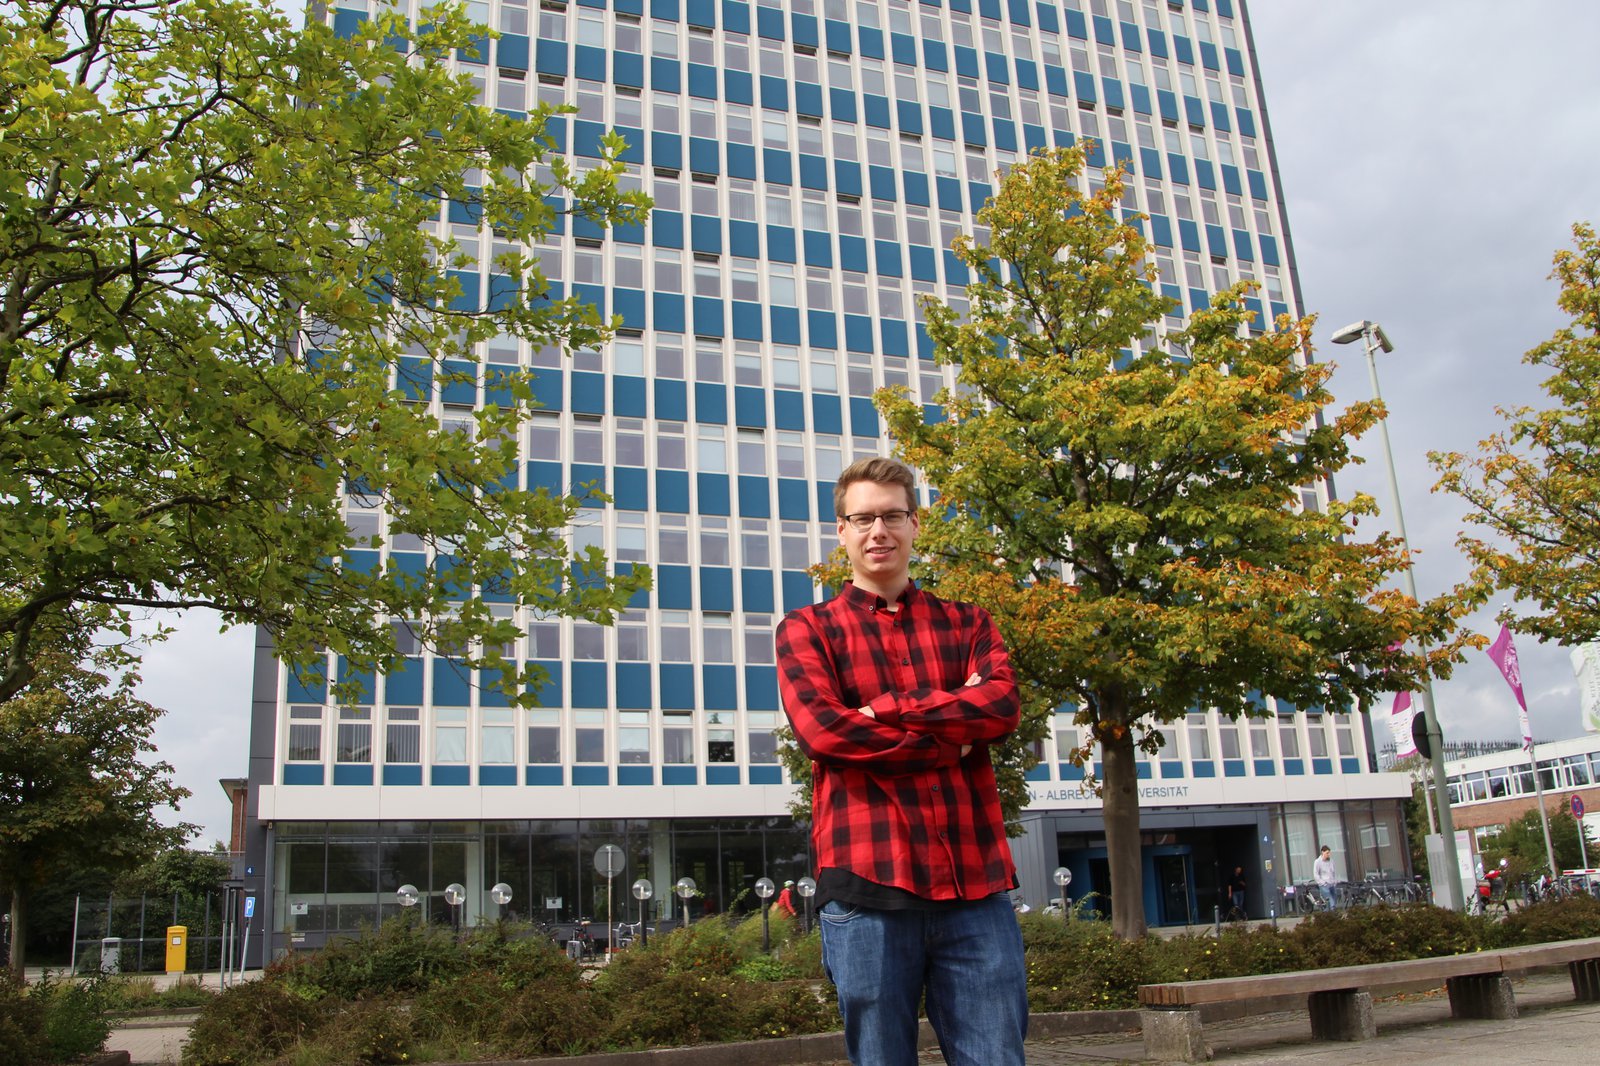 Ein Student in einem schwarz-rot kariertem Hemd steht vor einem hohen Gebäude auf dem Campus.